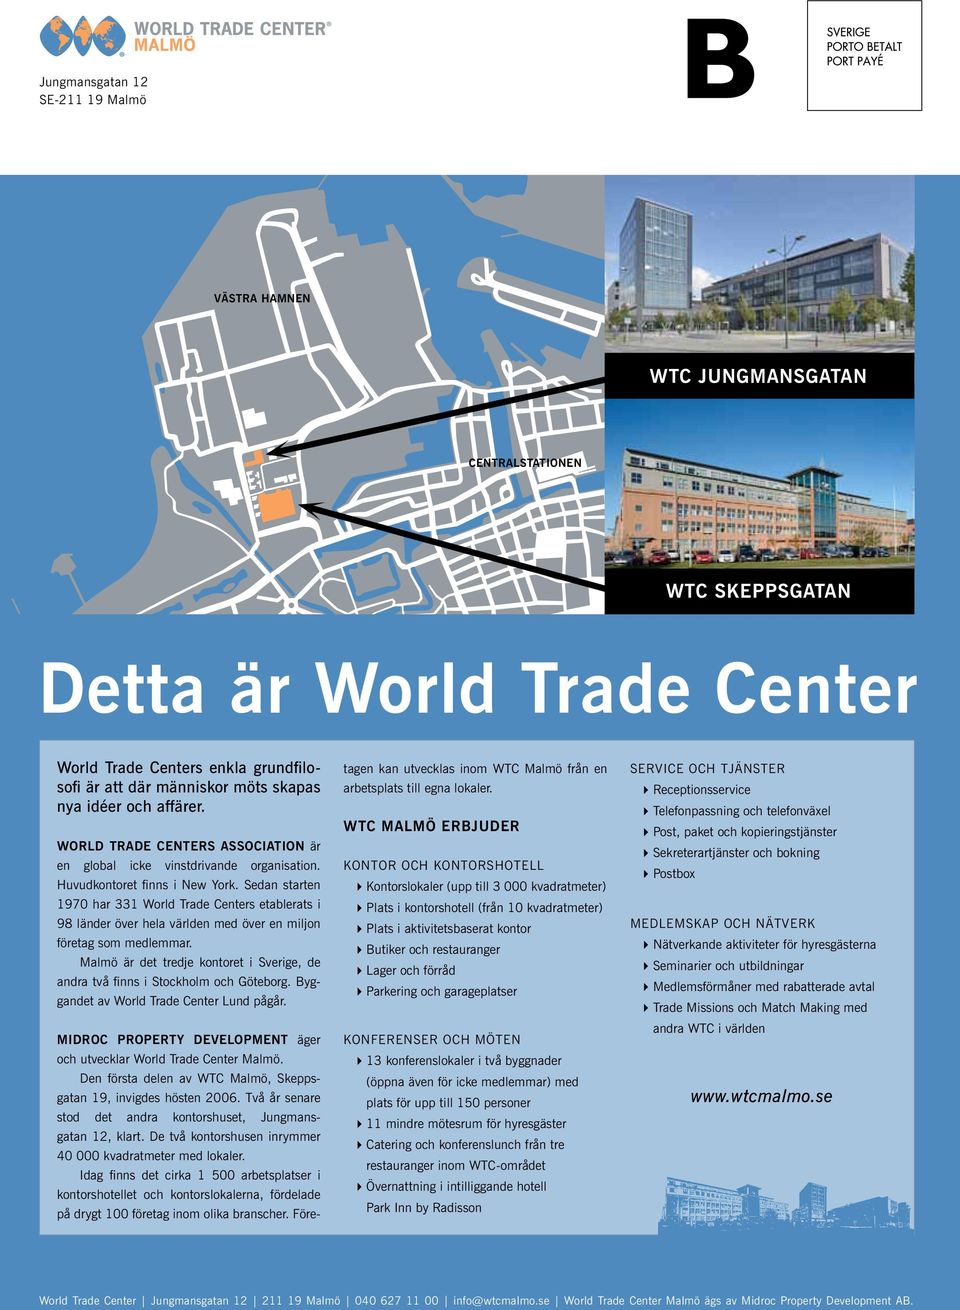 Sedan starten 1970 har 331 World Trade Centers etablerats i 98 länder över hela världen med över en miljon företag som medlemmar.